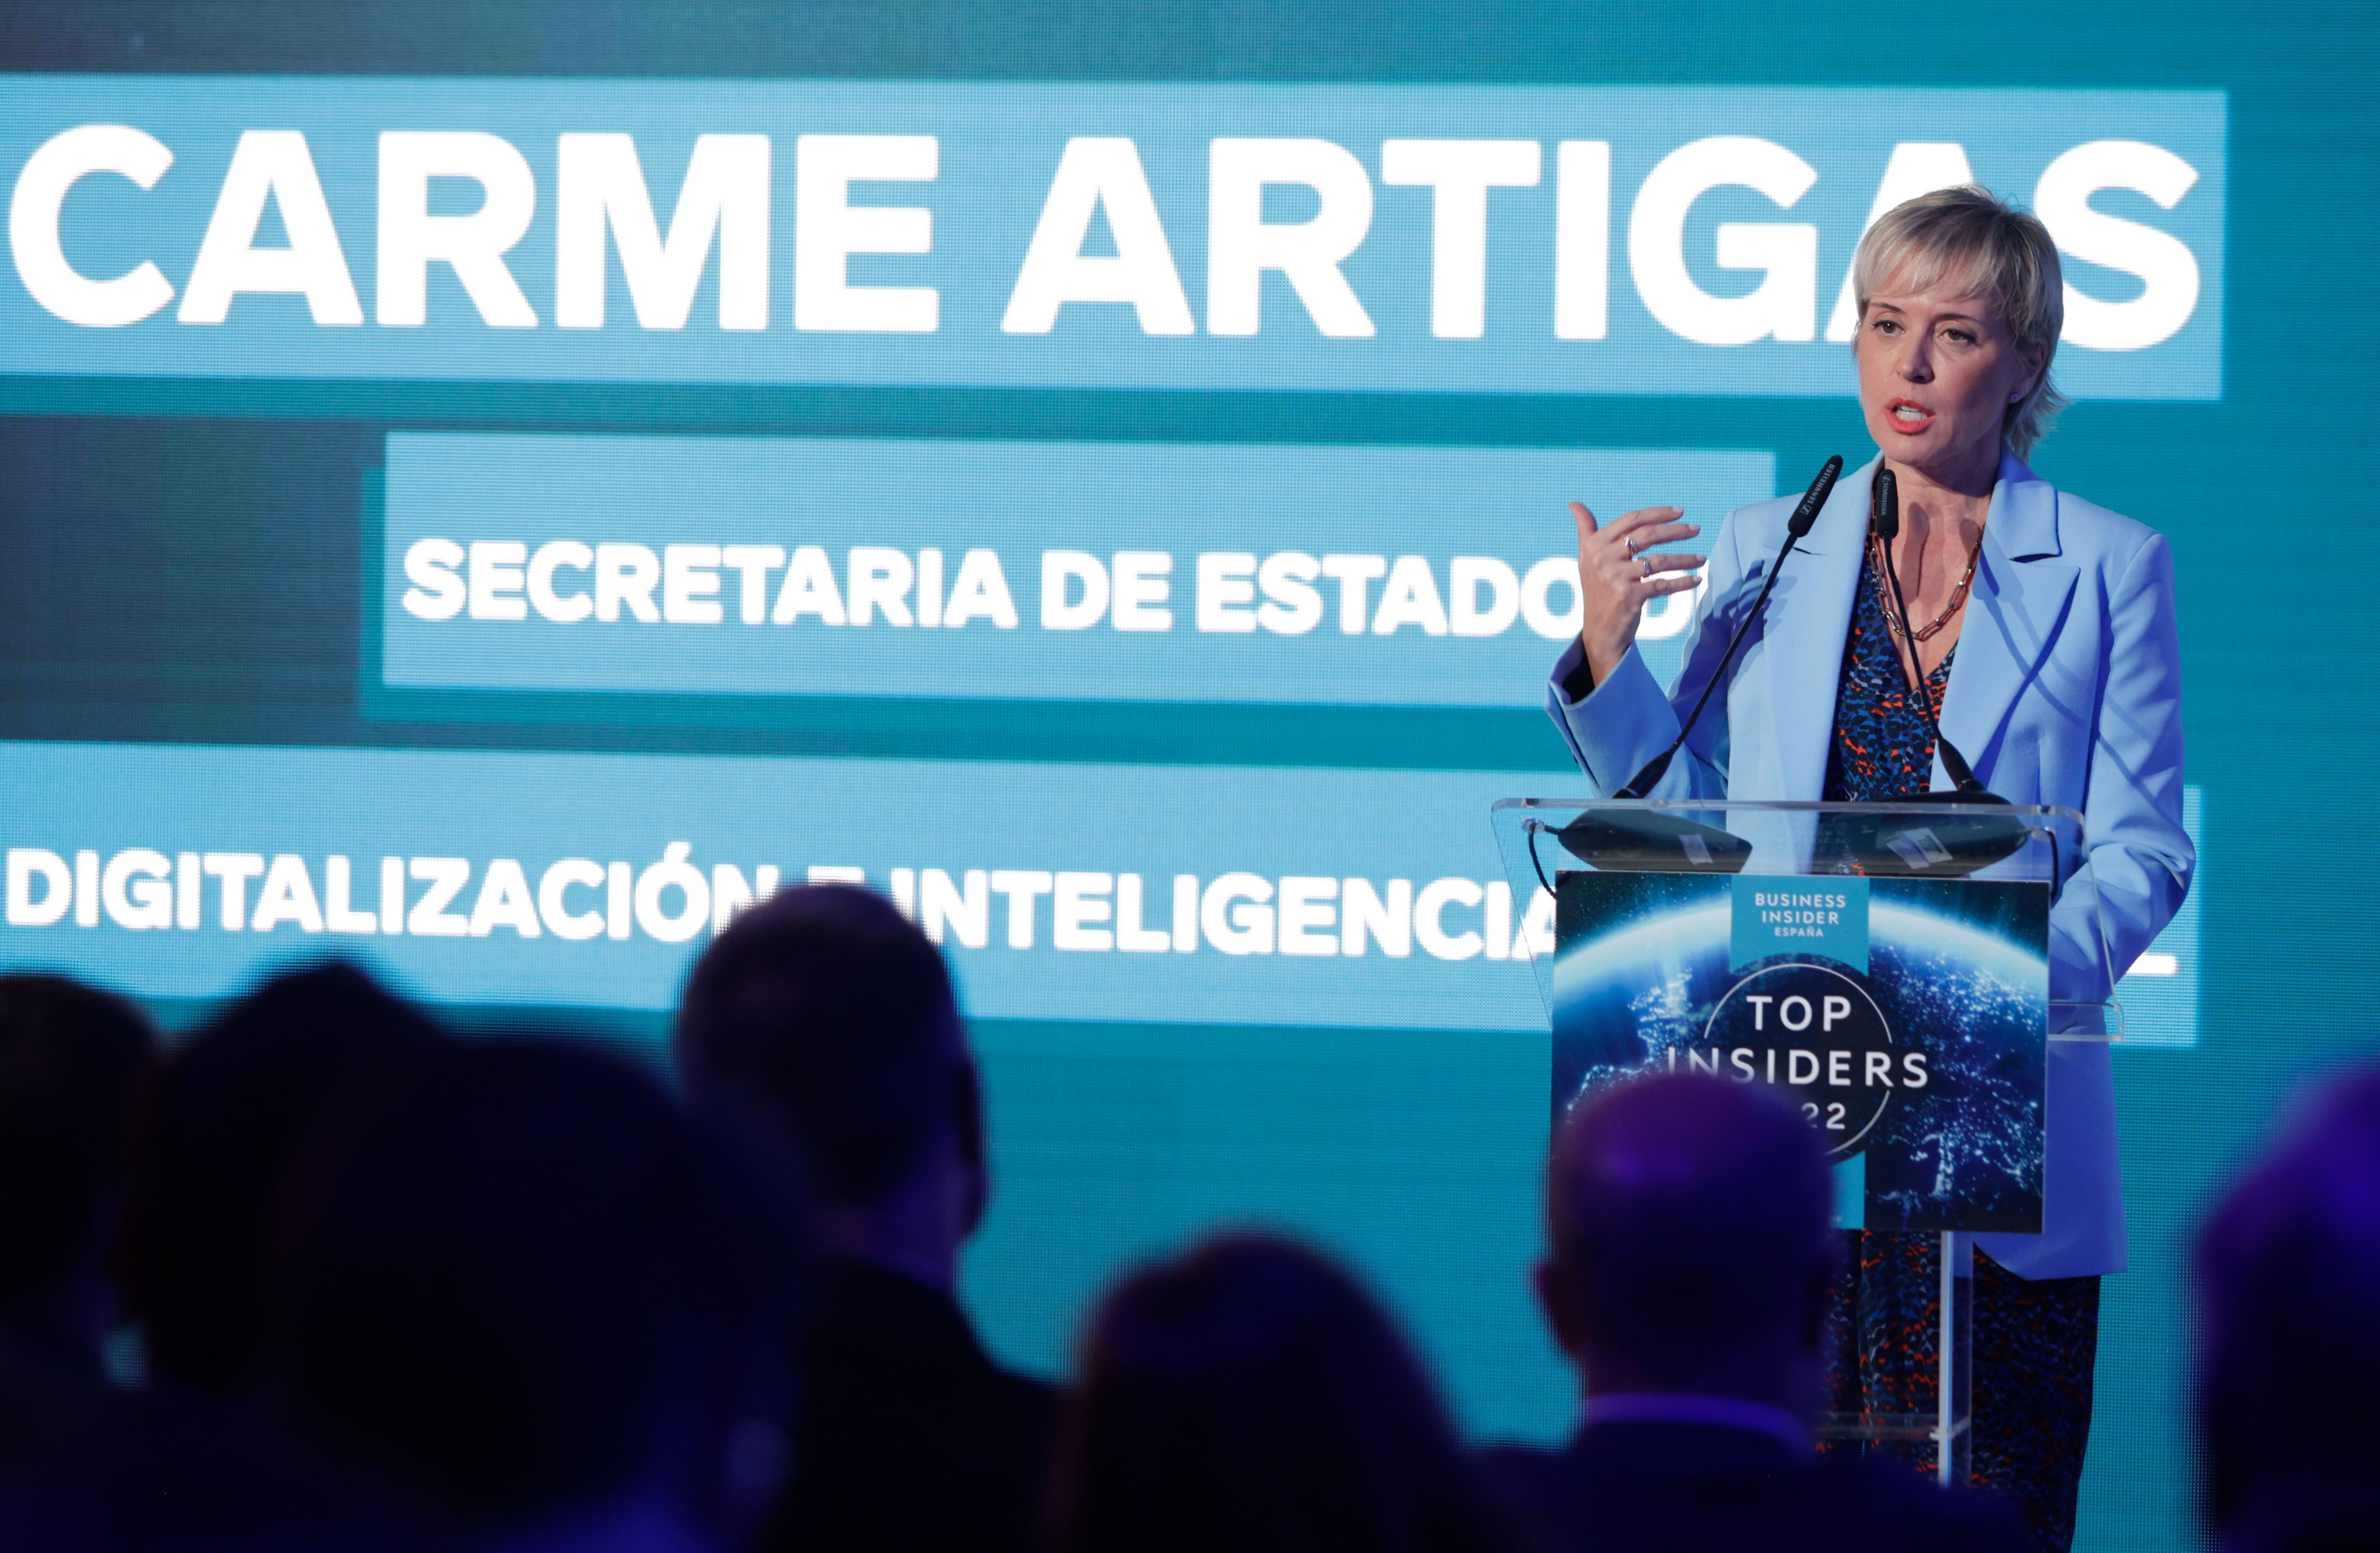 Carme Artigas, secretaria de Estado de Digitalización, en los premios Top Insiders 2022 de Business Insider España.